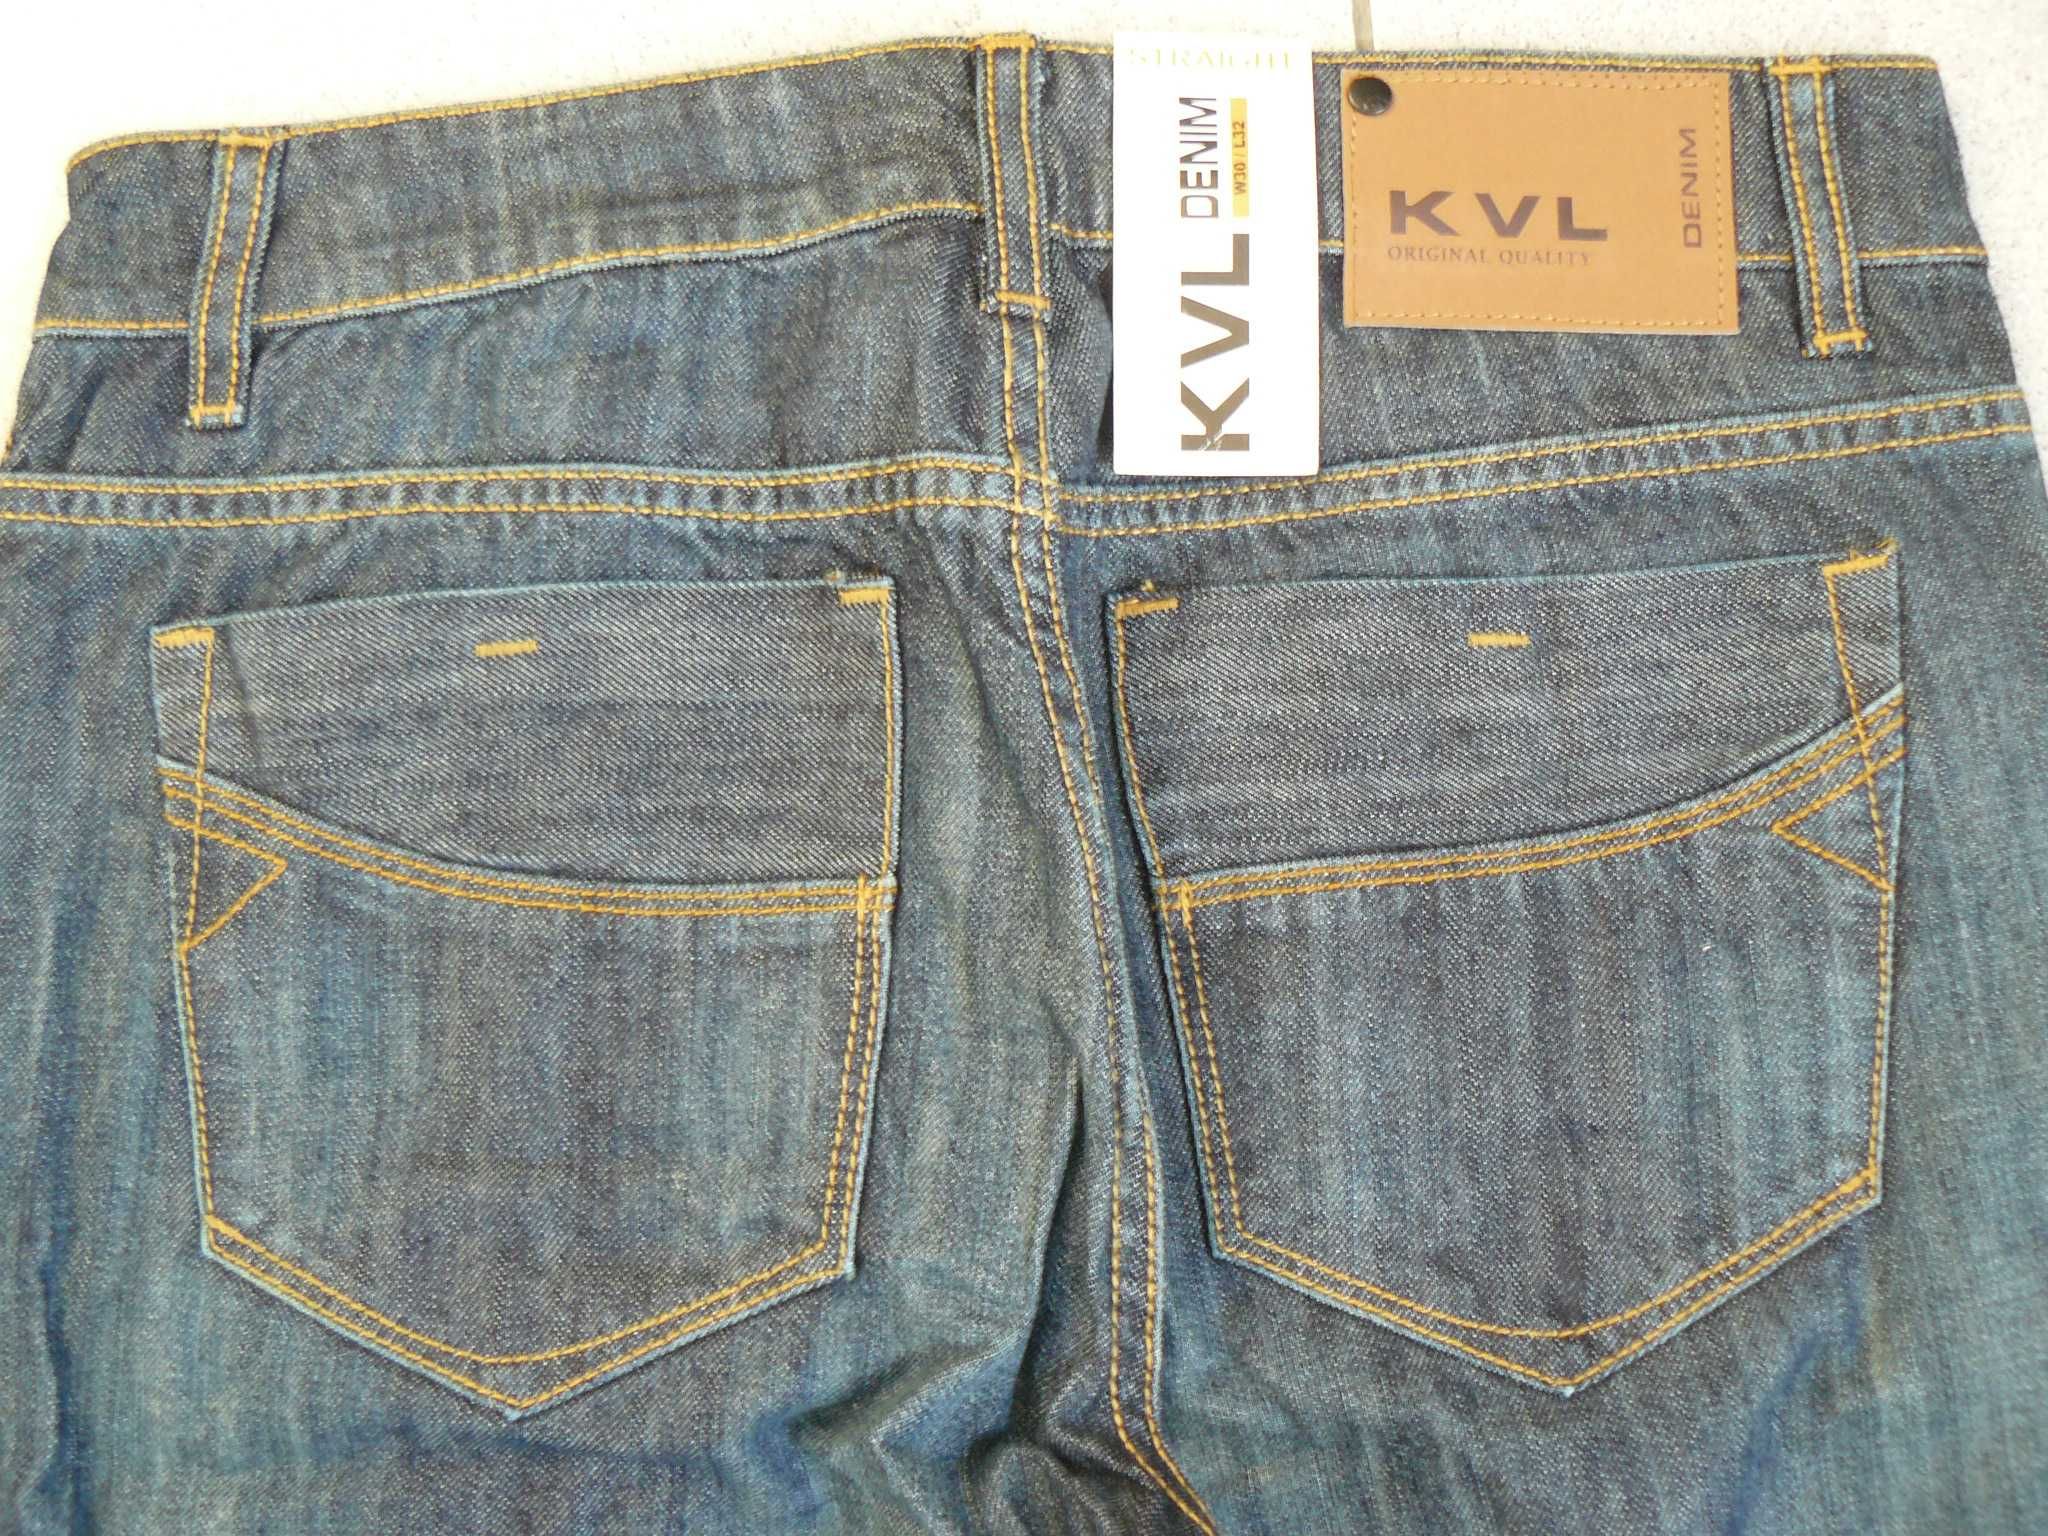 Jeans/Blugi Barbati KENVELO Noi KVL5 Originali,Marime W30/L32, CAC 144